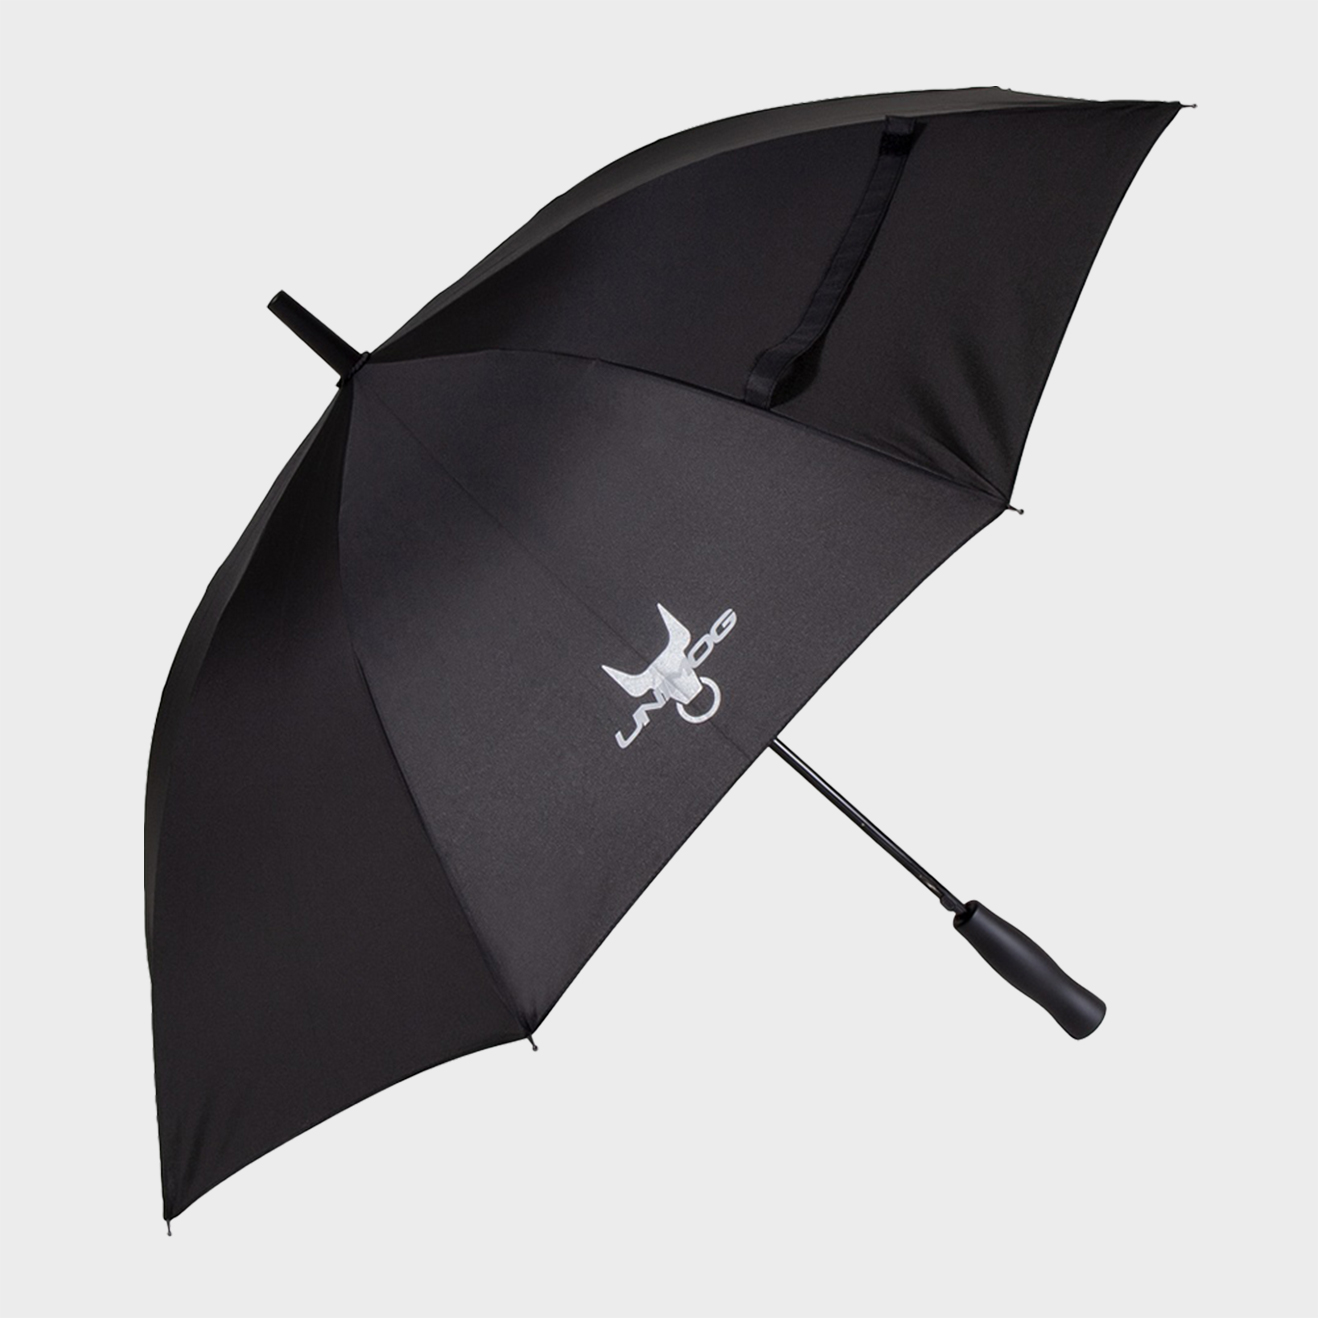 Regenschirm, Unimog